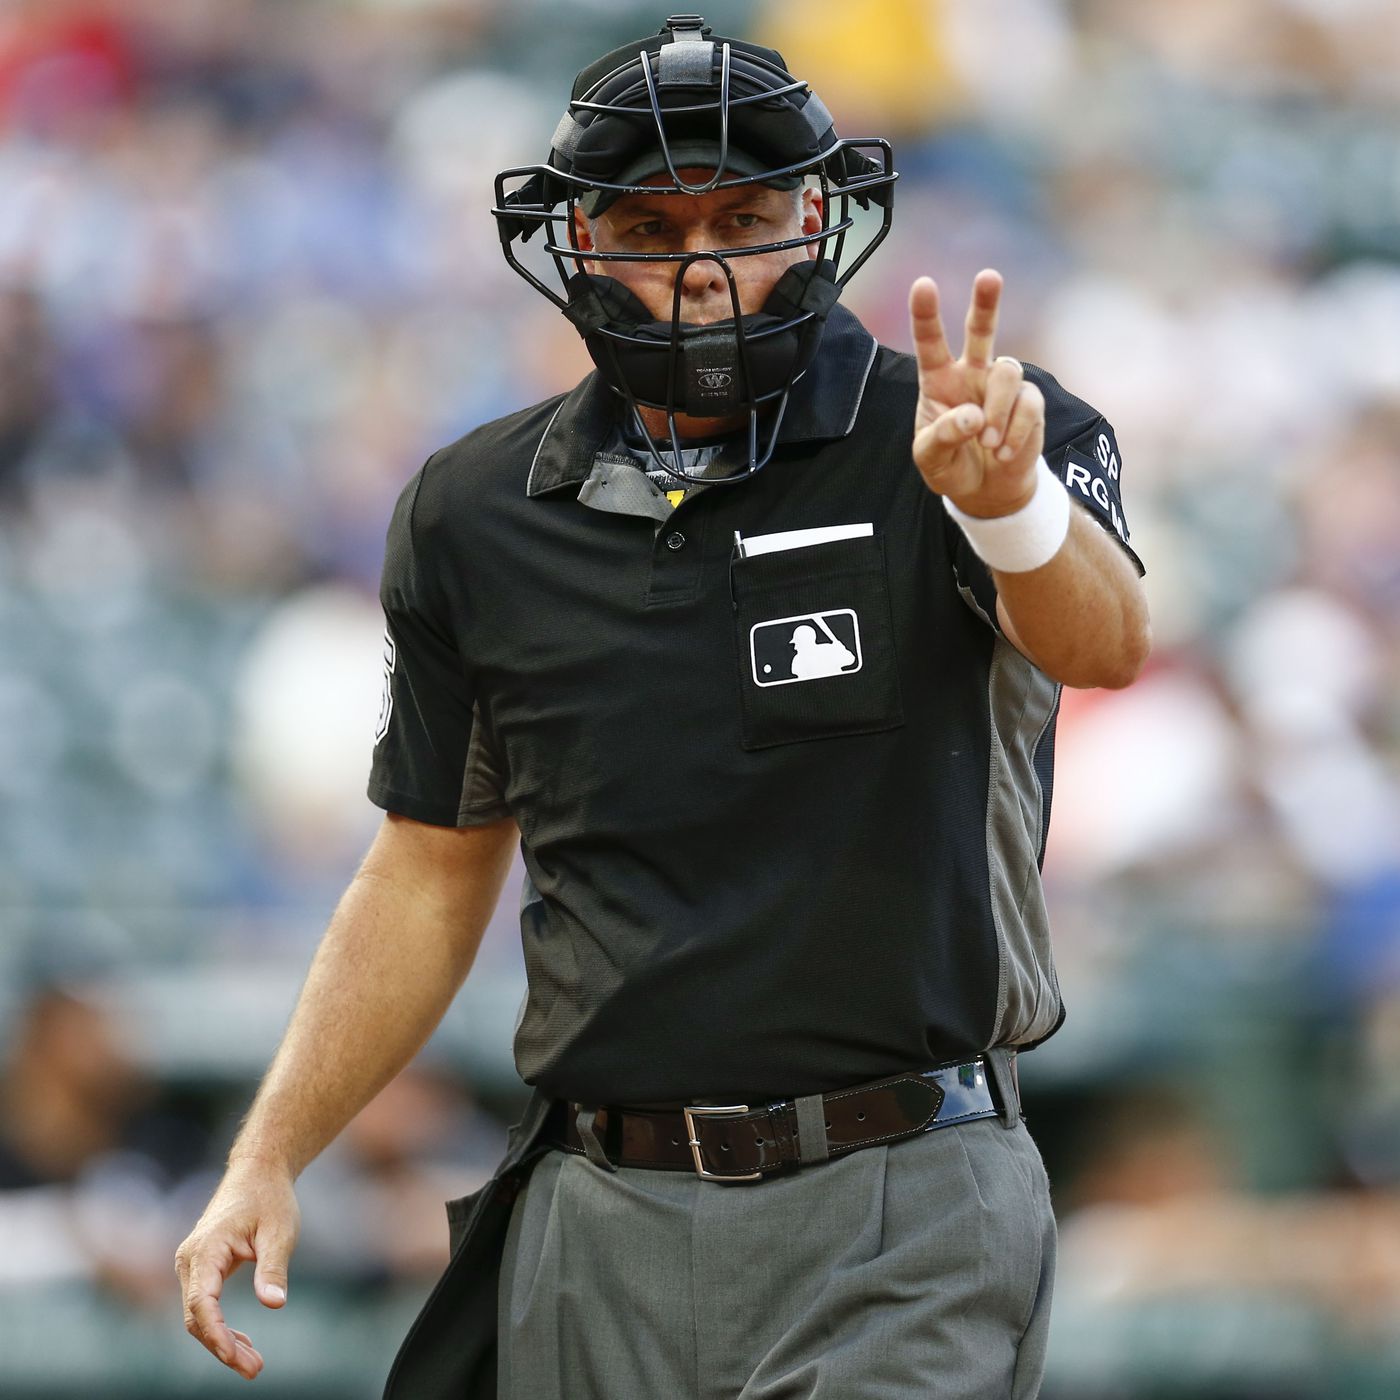 Robot Umpires in Baseball: A Terrible Idea